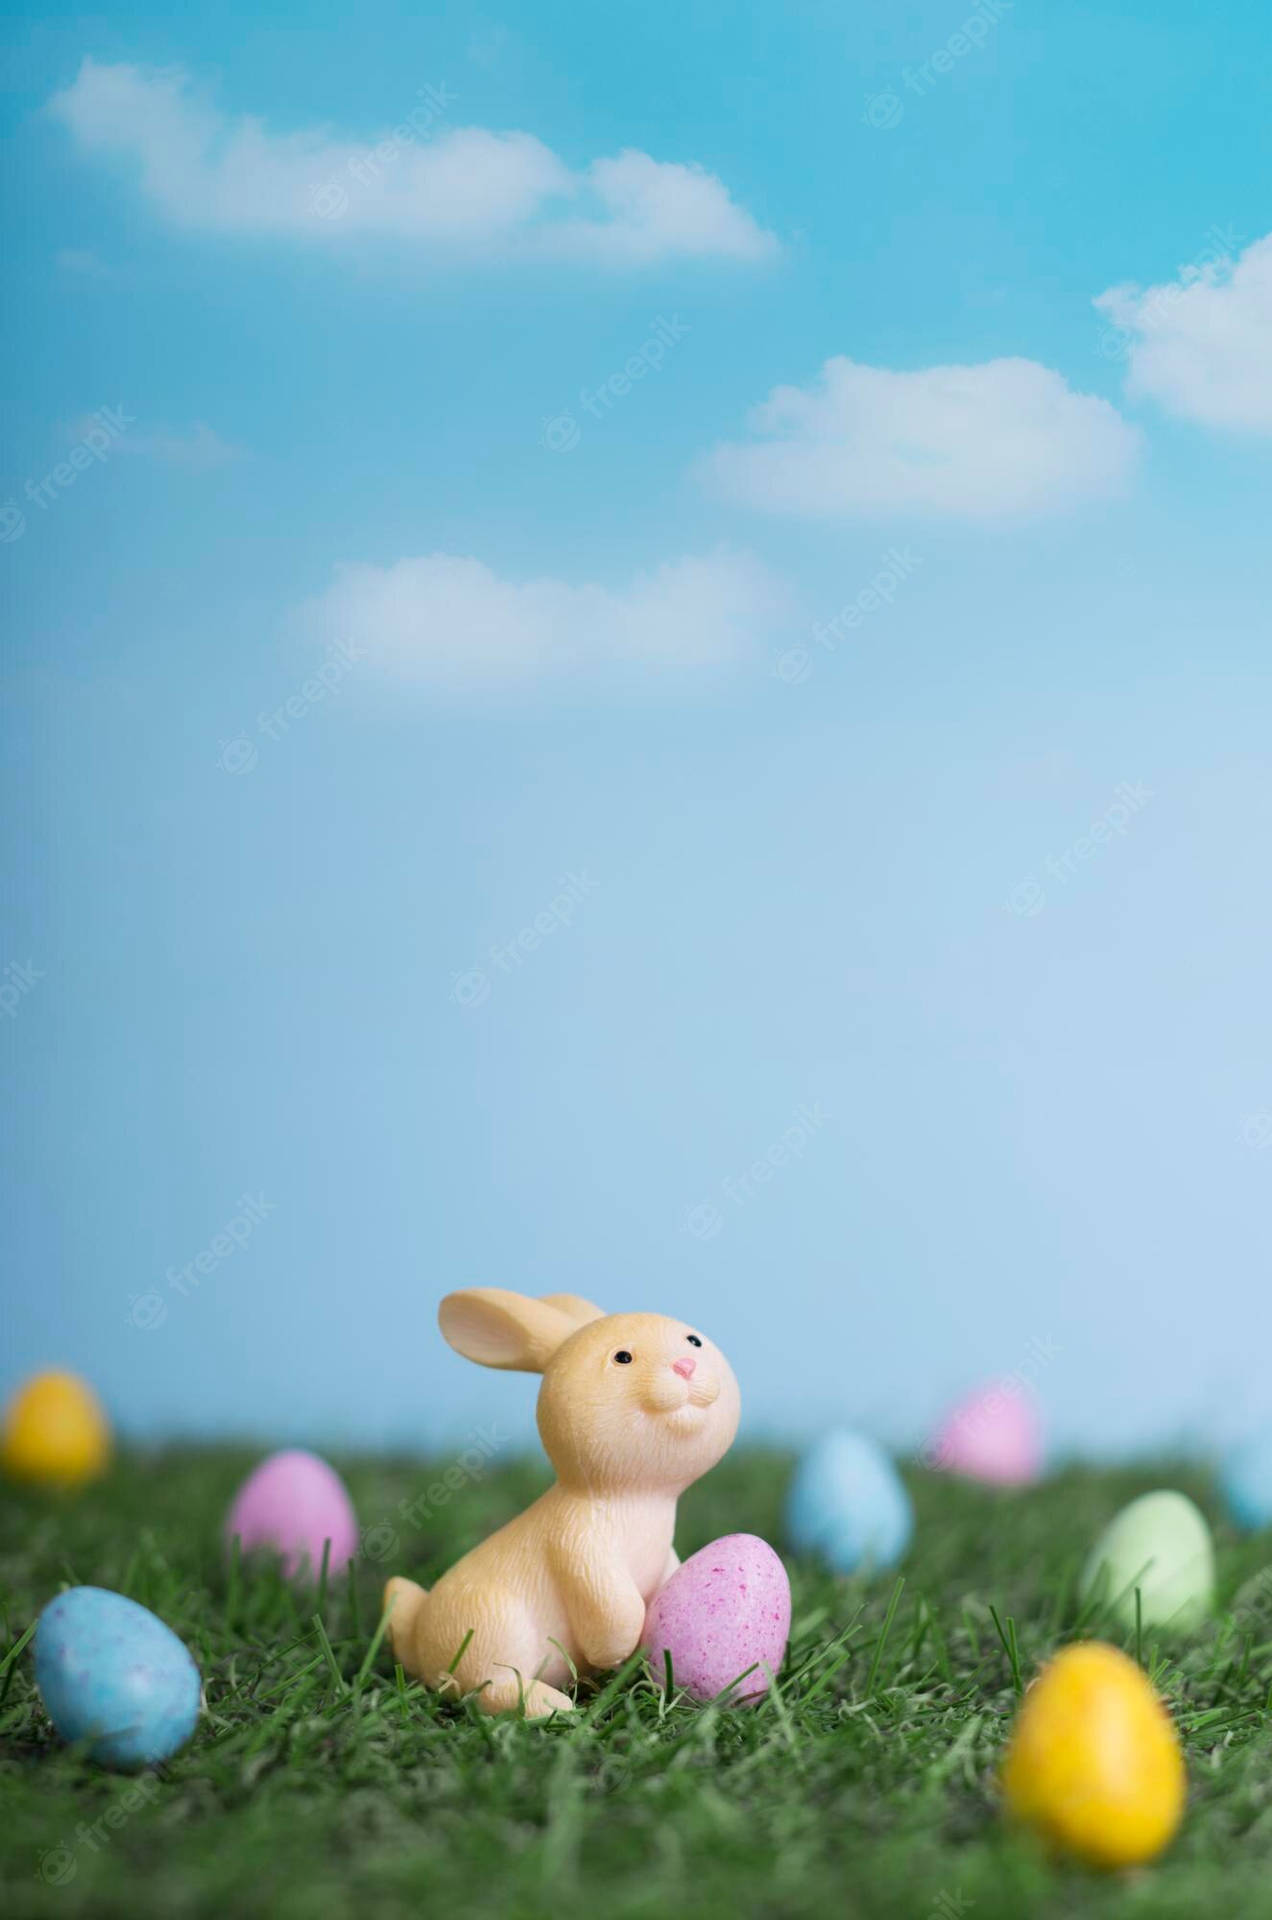 Free Easter iPhone Wallpaper Download  Rachel Rosalie Design